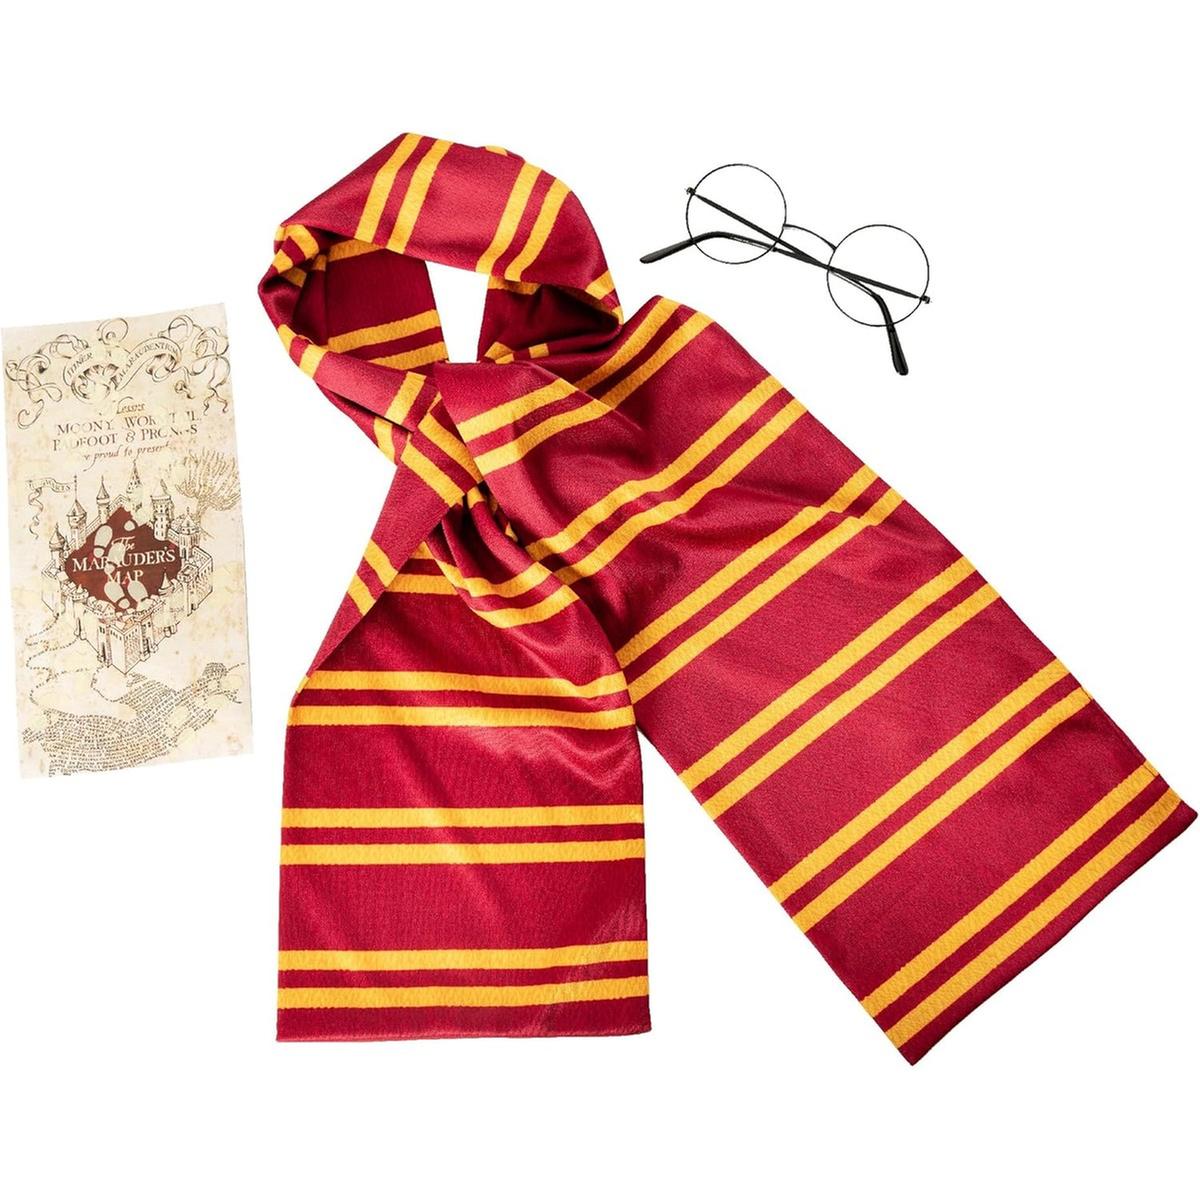 Comprar Bufanda Gryffindor Harry Potter oficial al mejor precio